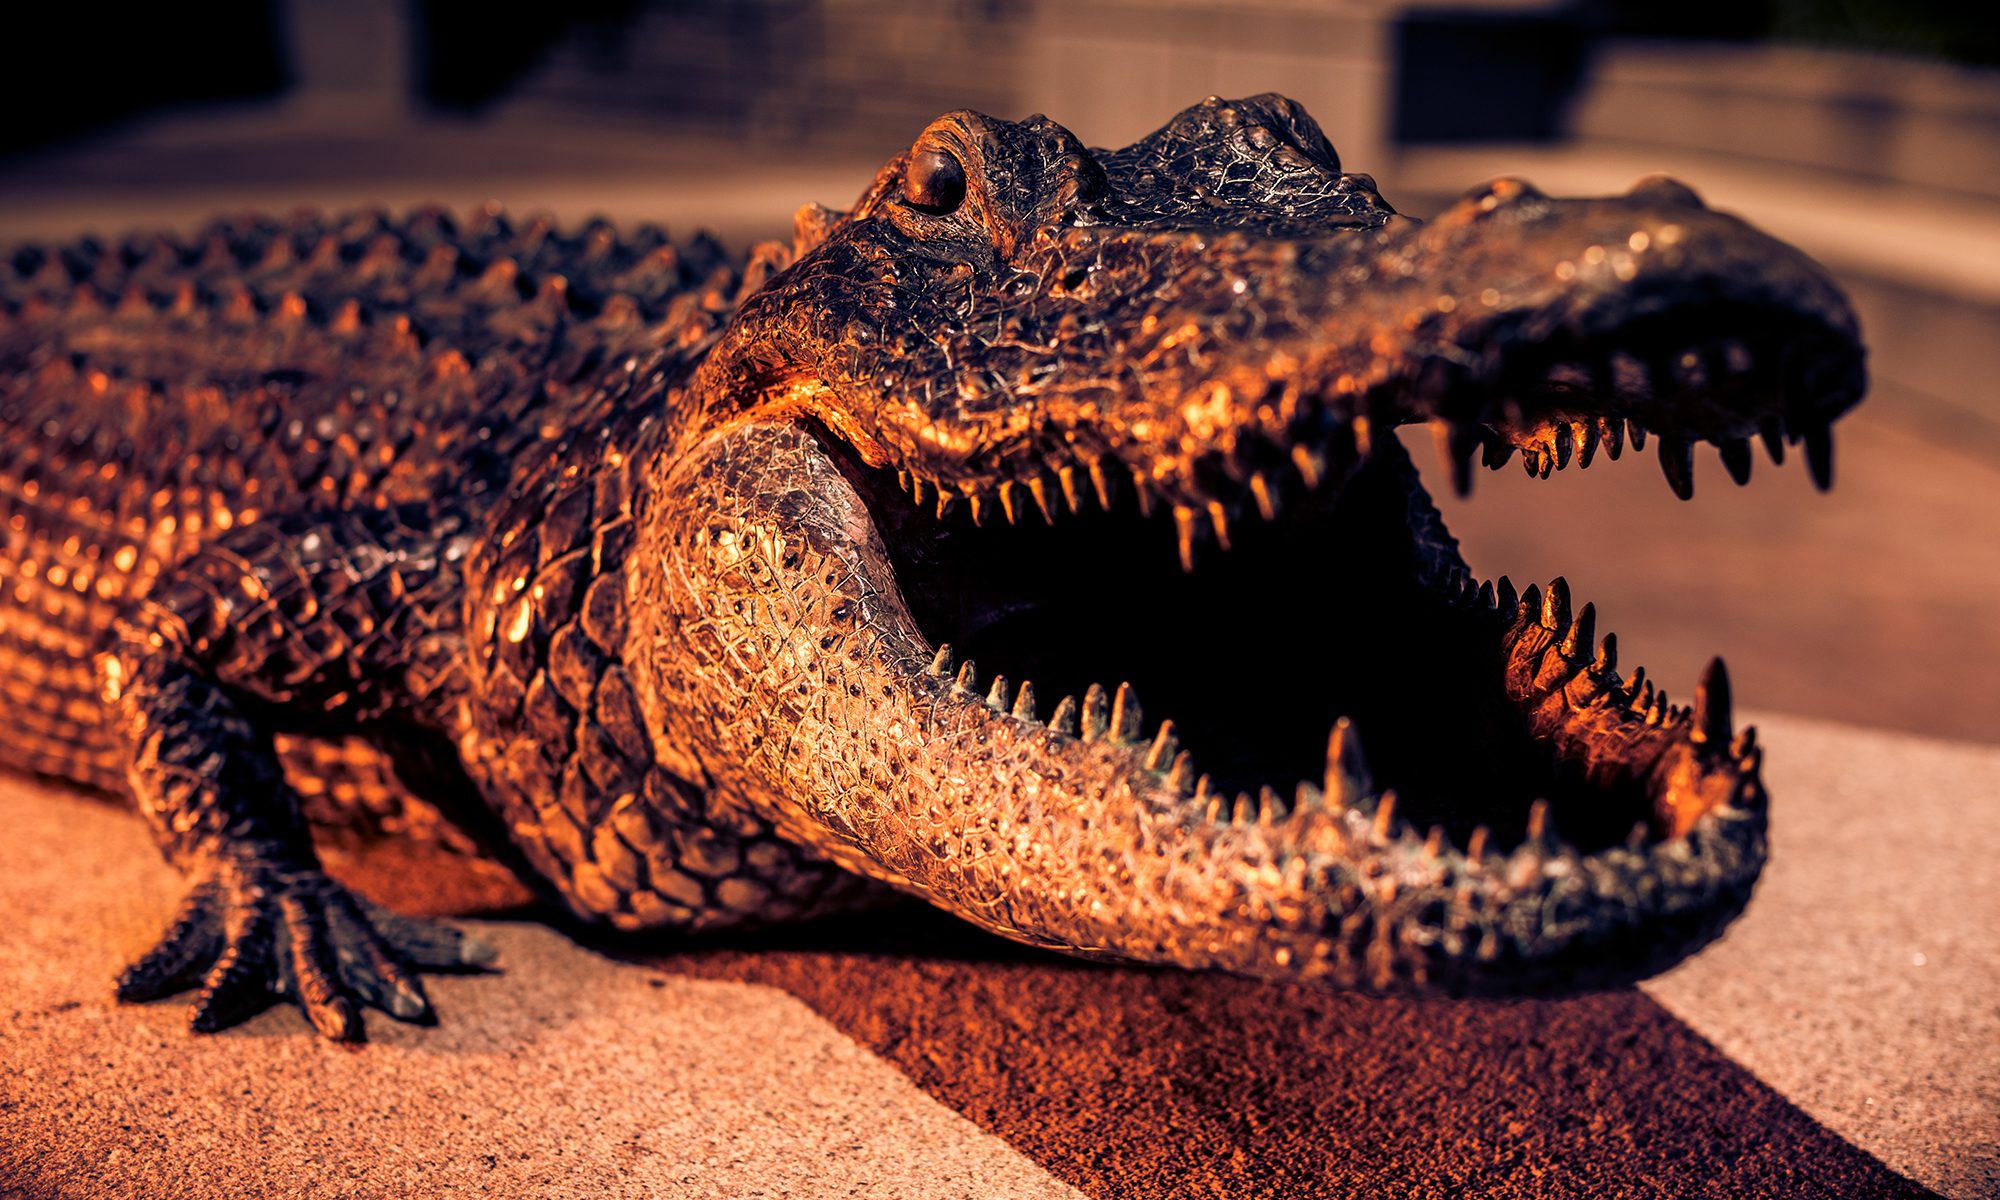 Alligator statue